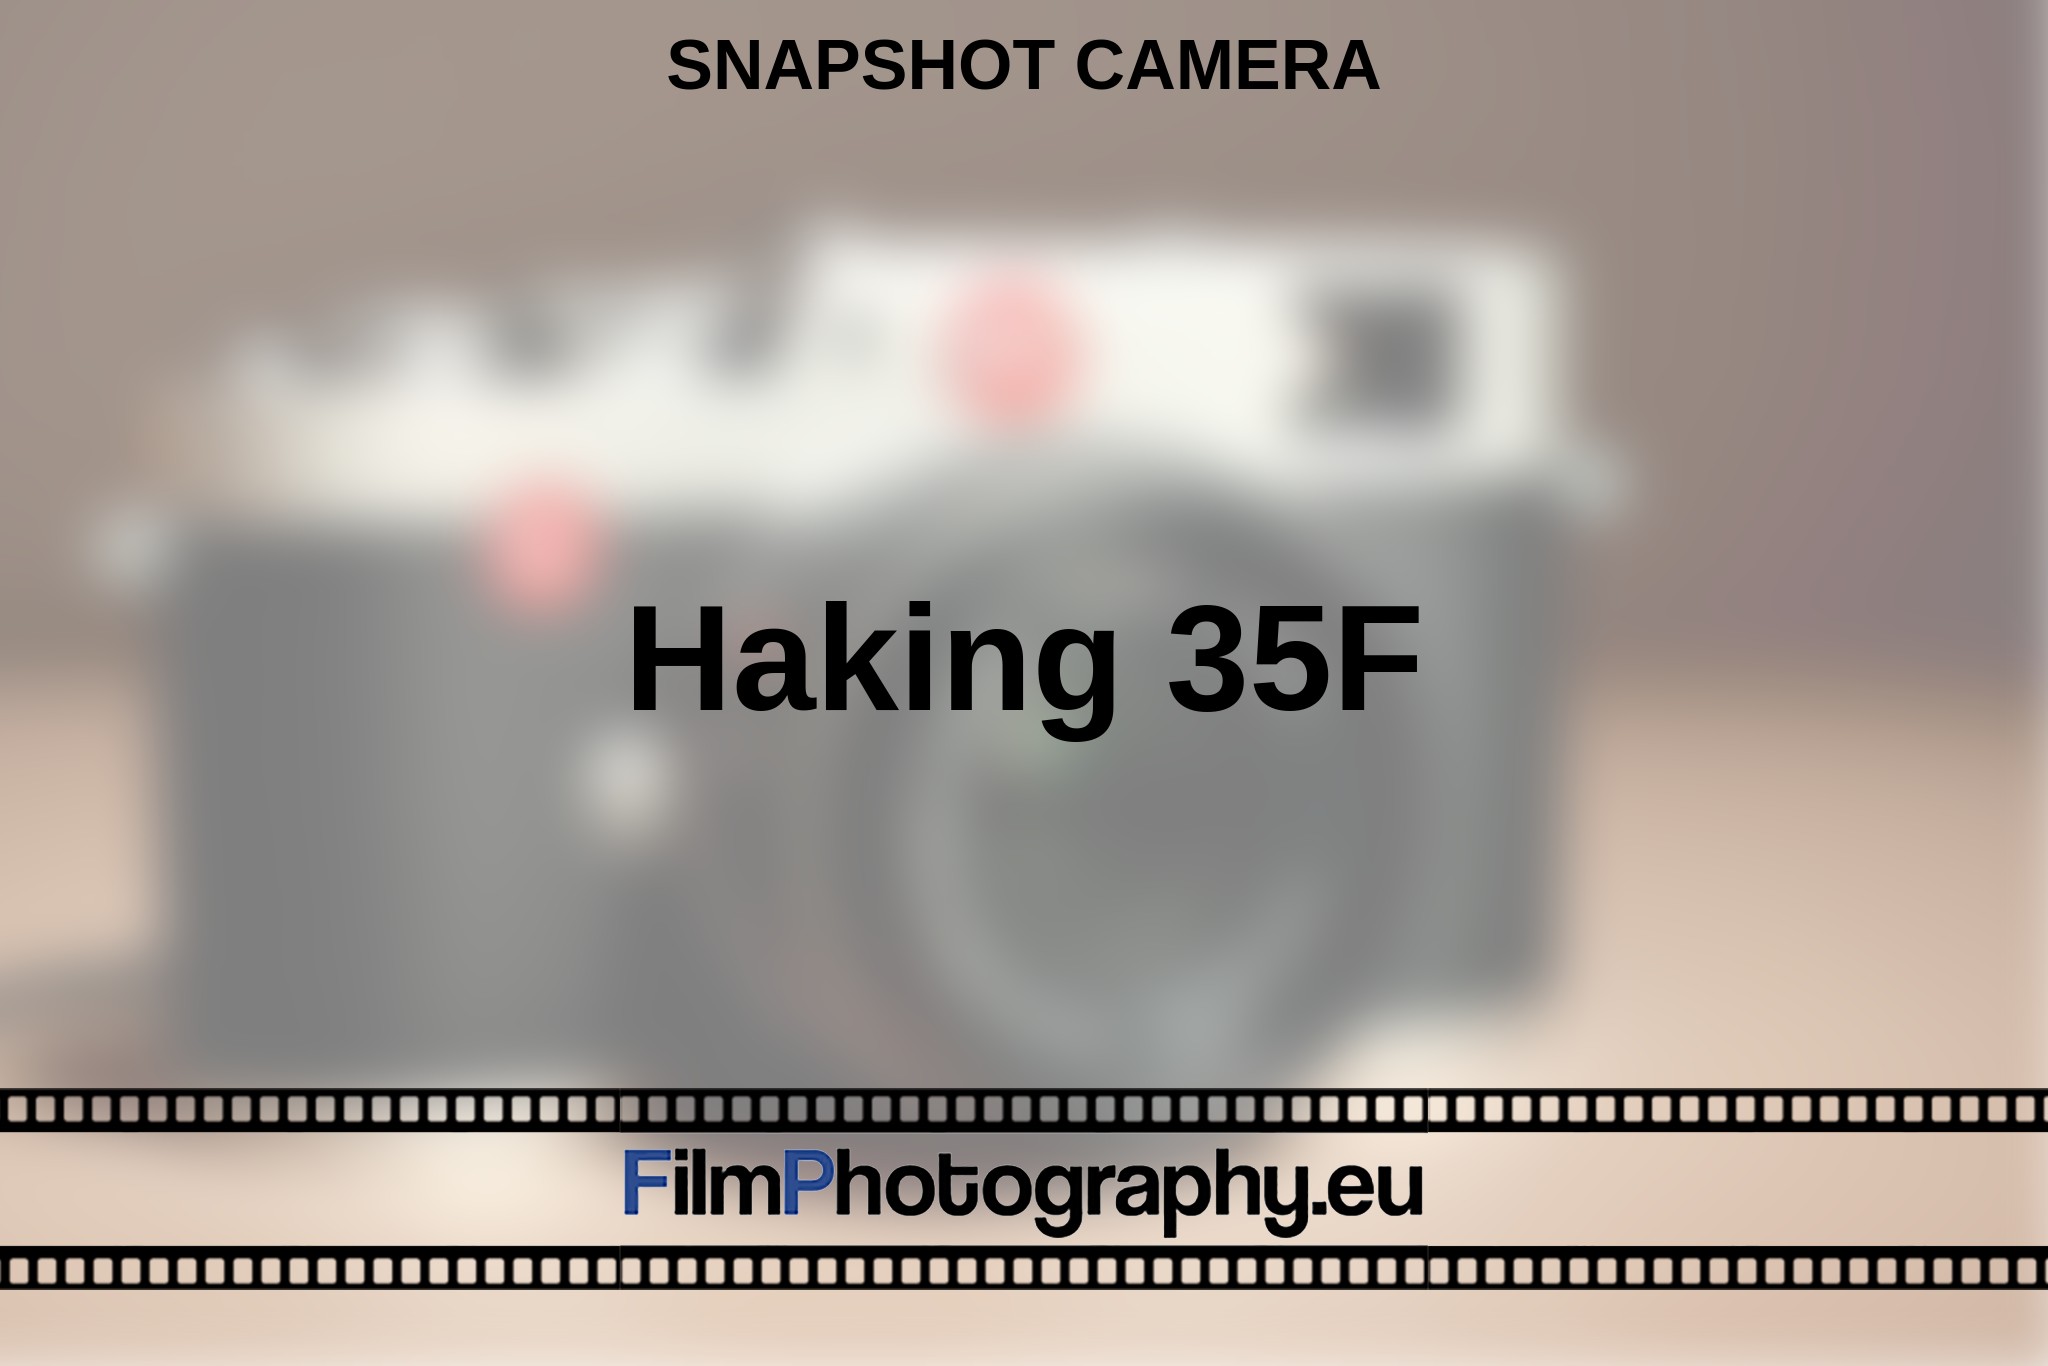 haking-35f-snapshot-camera-en-bnv.jpg